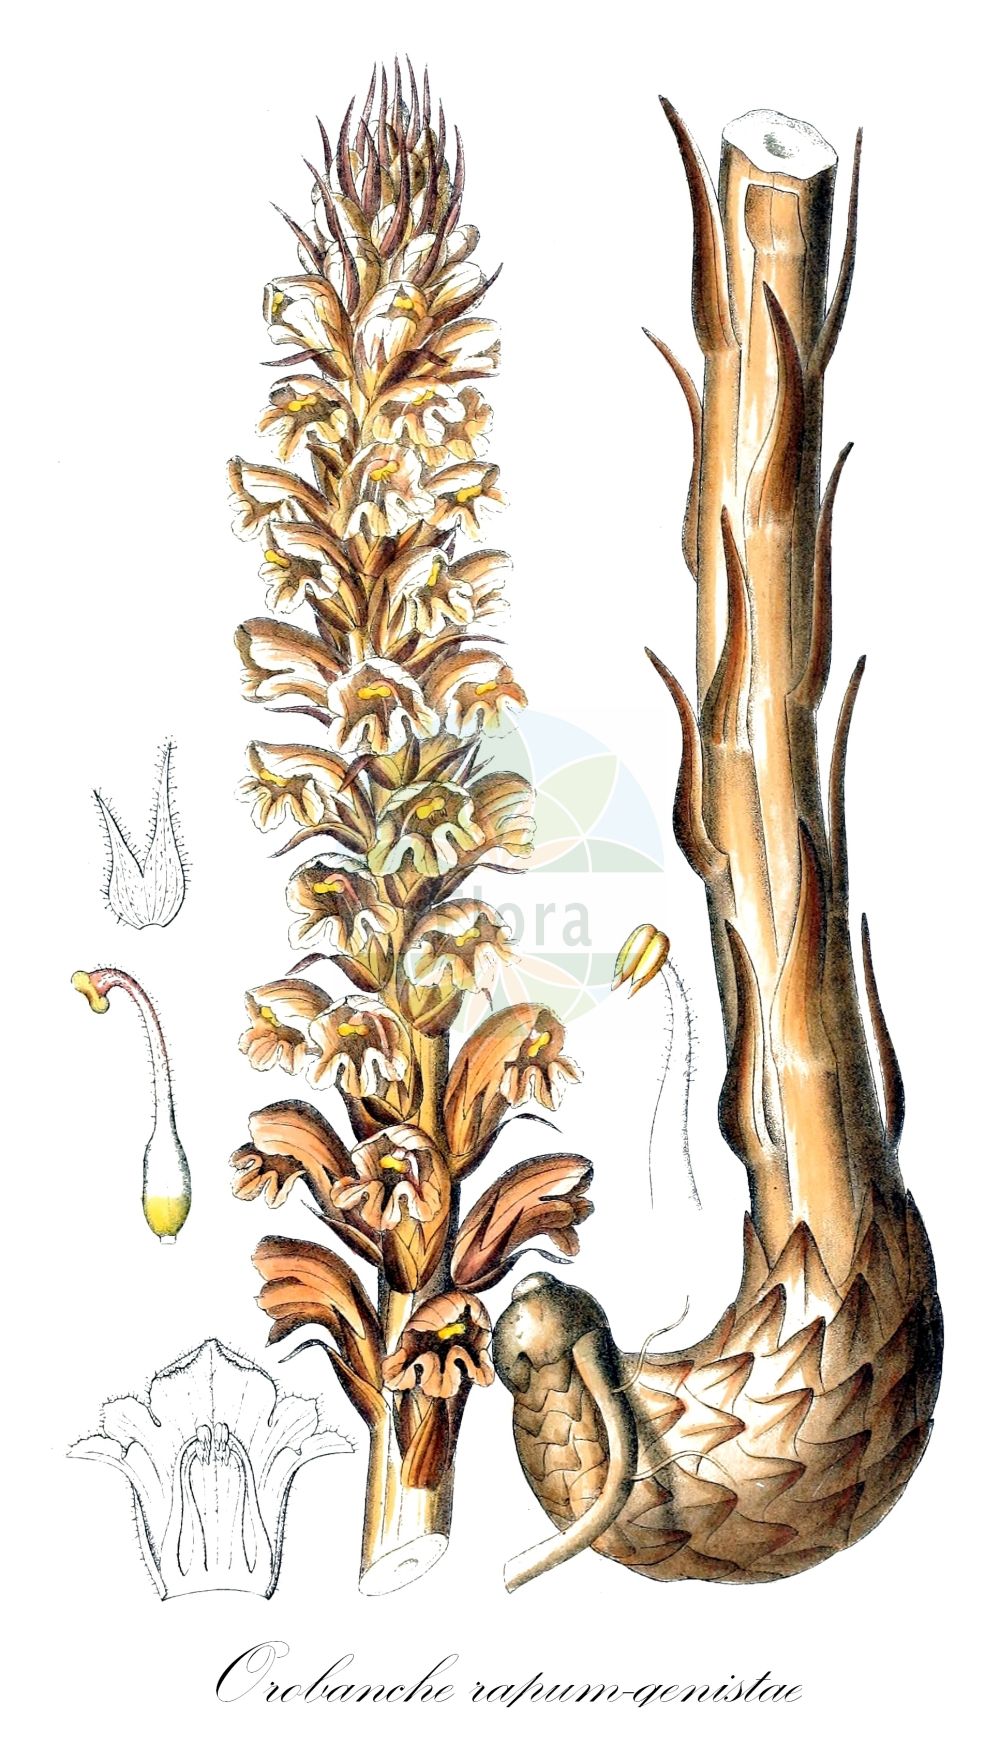 Historische Abbildung von Orobanche rapum-genistae (Ginster-Sommerwurz - Greater Broomrape). Das Bild zeigt Blatt, Bluete, Frucht und Same. ---- Historical Drawing of Orobanche rapum-genistae (Ginster-Sommerwurz - Greater Broomrape). The image is showing leaf, flower, fruit and seed.(Orobanche rapum-genistae,Ginster-Sommerwurz,Greater Broomrape,Orobanche benthamii,Orobanche bracteata,Orobanche insolita,Orobanche major,Orobanche rapum,Orobanche rapum-genistae,Orobanche rapum-genistae subsp. benthamii,Ginster-Sommerwurz,Greater Broomrape,Orobanche,Sommerwurz,Broomrape,Orobanchaceae,Sommerwurzgewächse,Broomrape family,Blatt,Bluete,Frucht,Same,leaf,flower,fruit,seed,Dietrich (1833-1844))